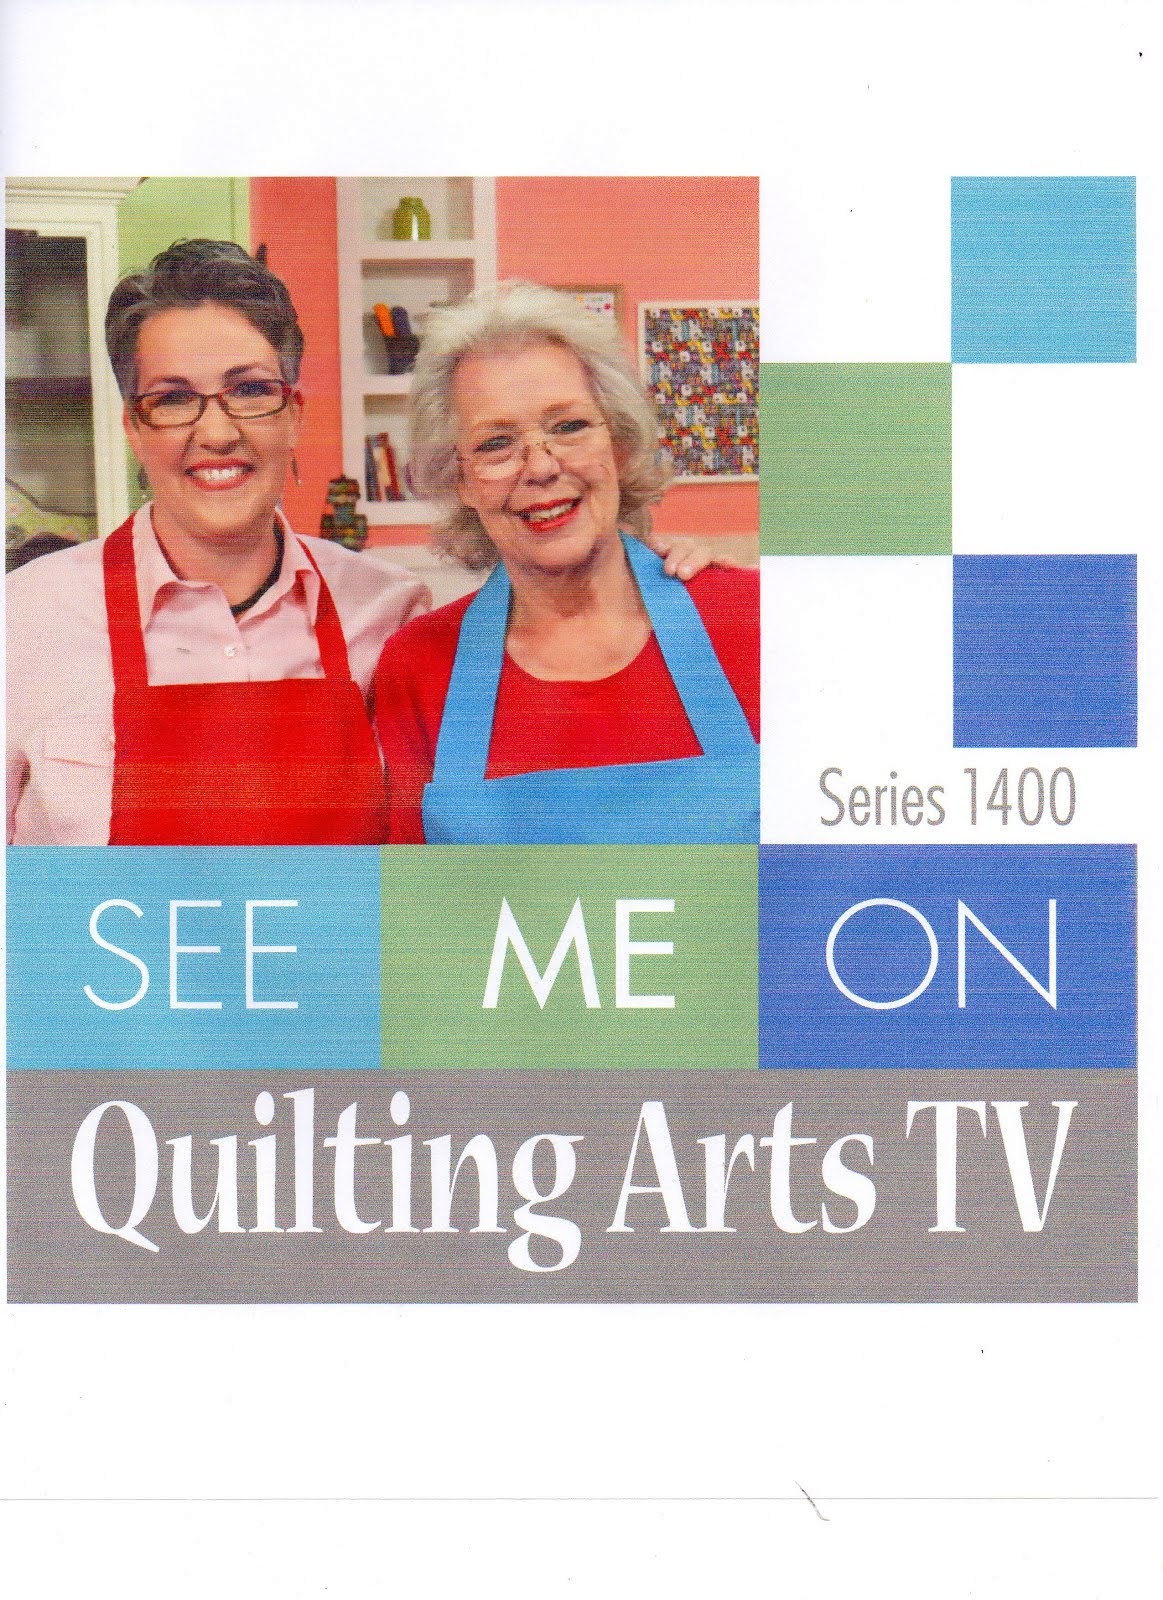 Quilting Arts TV Series 1400